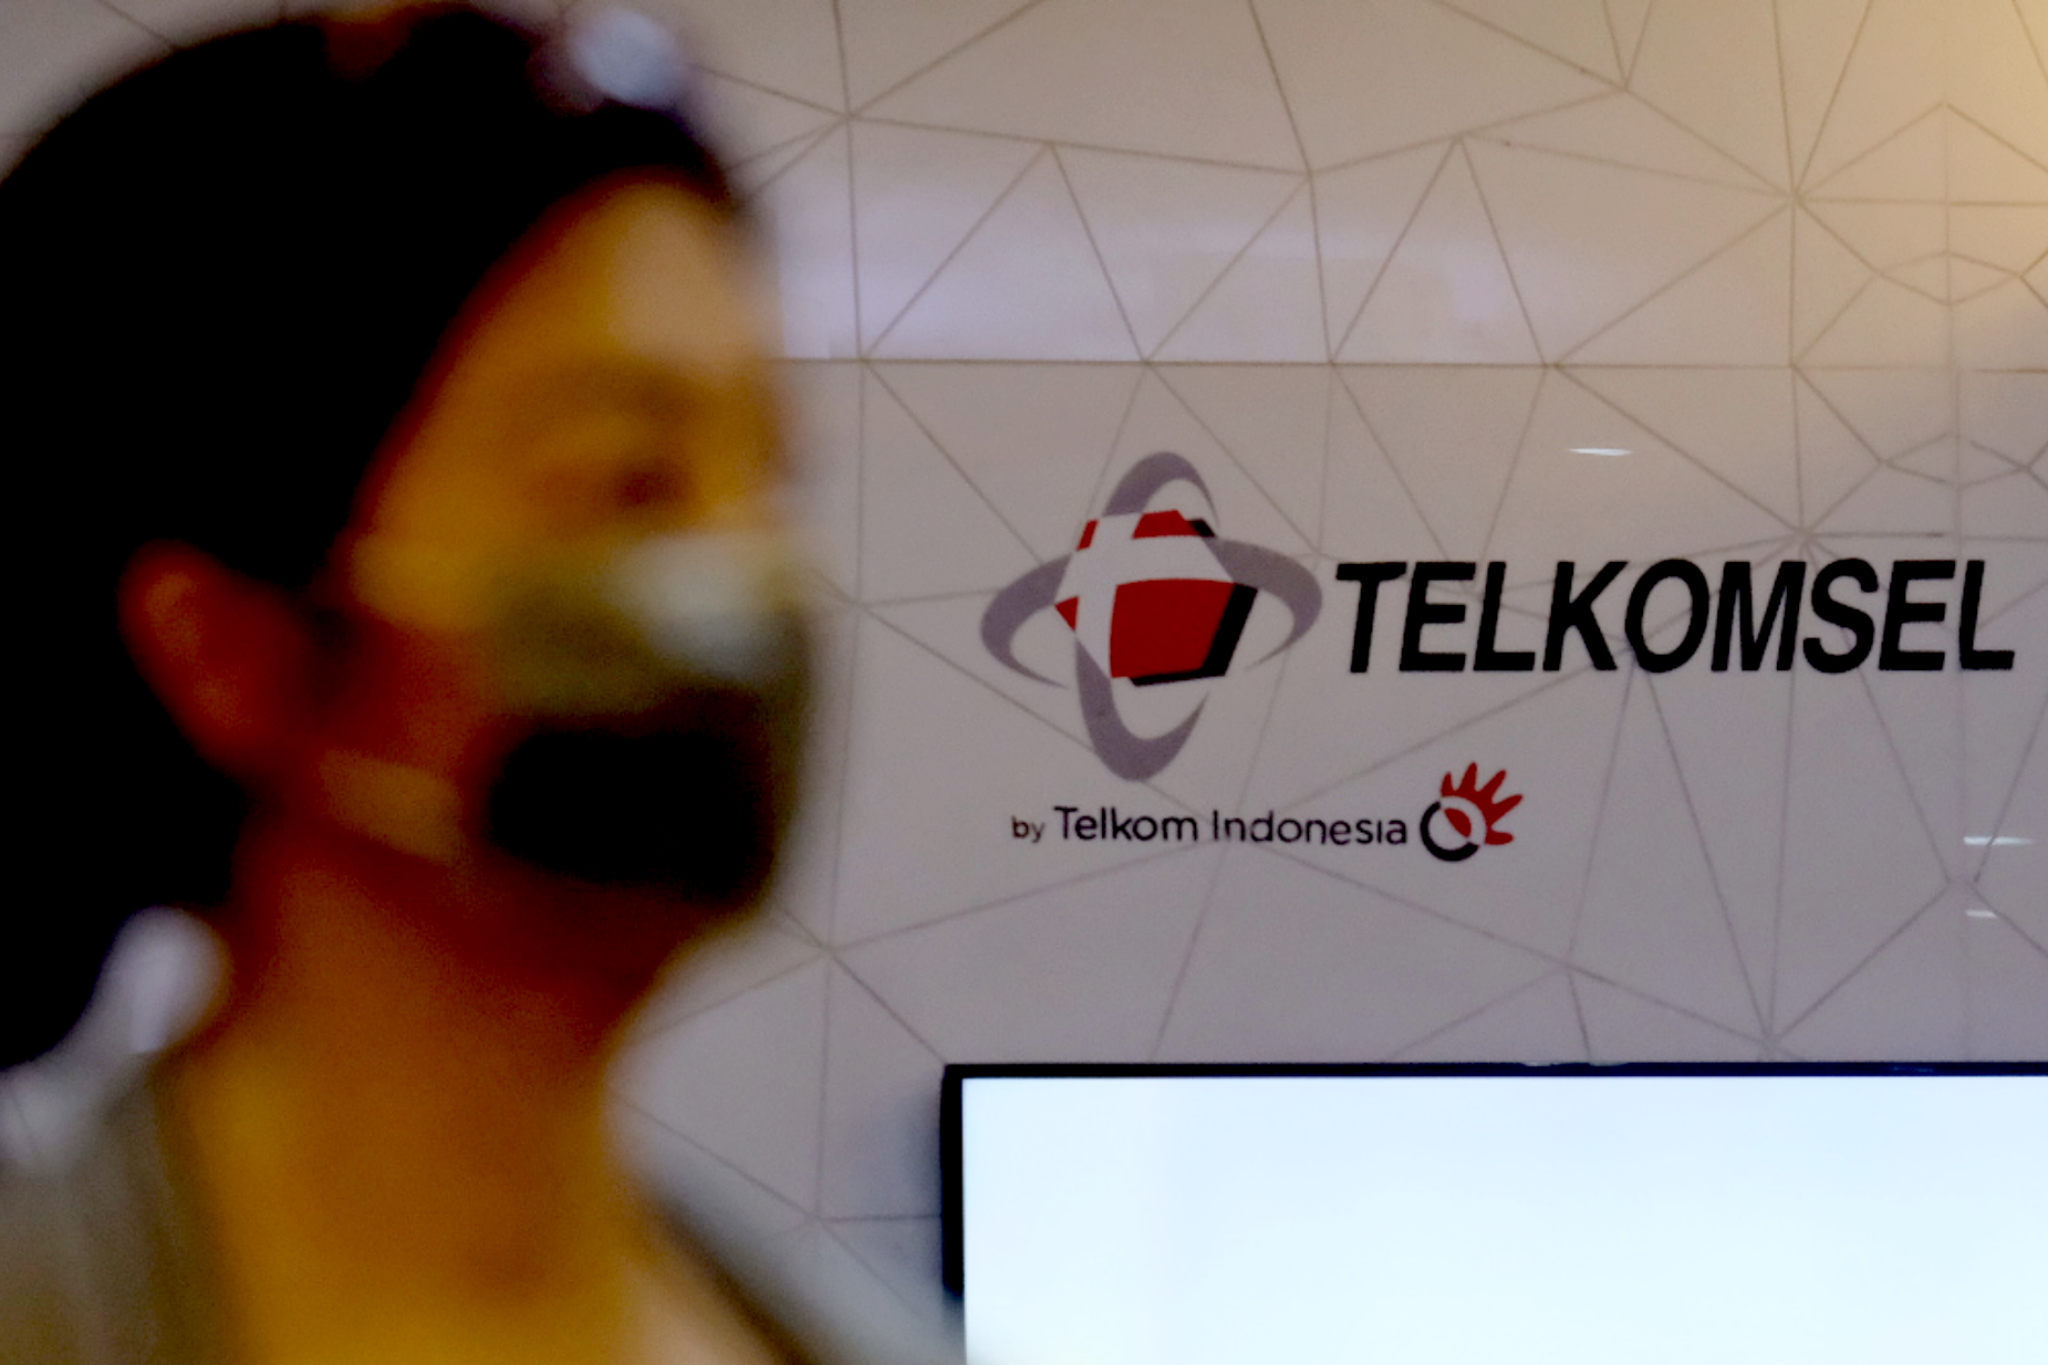 <p>Pelanggan melintas di dekat logo Telkomsel di gerai GraPARI Telkomsel yang berada di salah satu pusat perbelanjaan di Jakarta, Senin, 19 April 2021. Foto: Ismail Pohan/TrenAsia</p>
